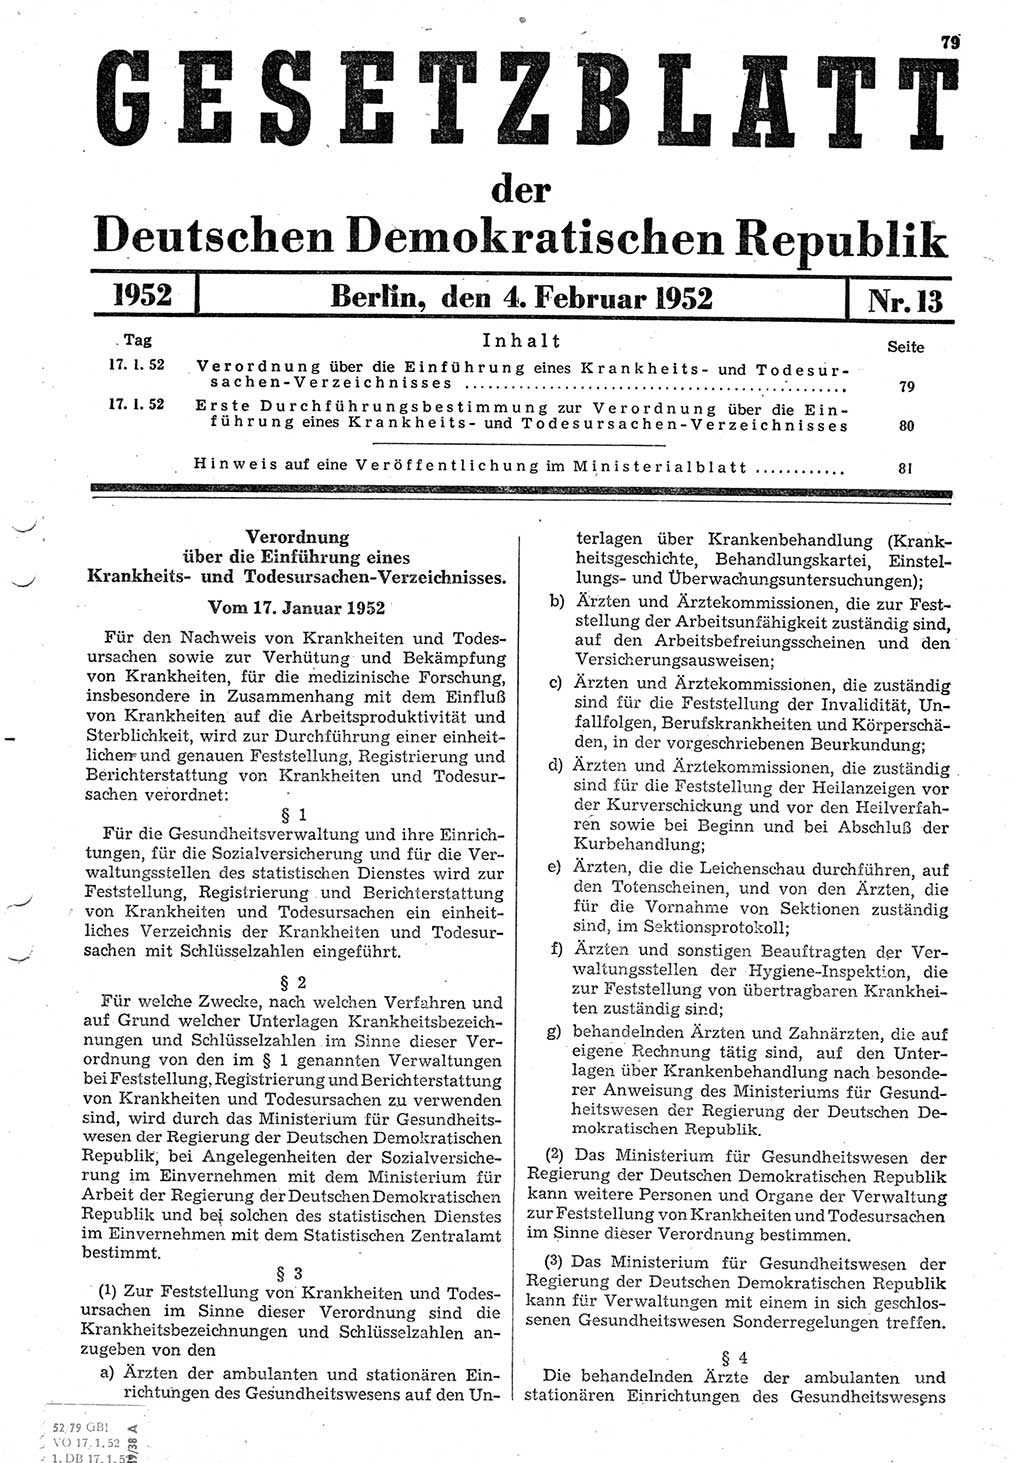 Gesetzblatt (GBl.) der Deutschen Demokratischen Republik (DDR) 1952, Seite 79 (GBl. DDR 1952, S. 79)